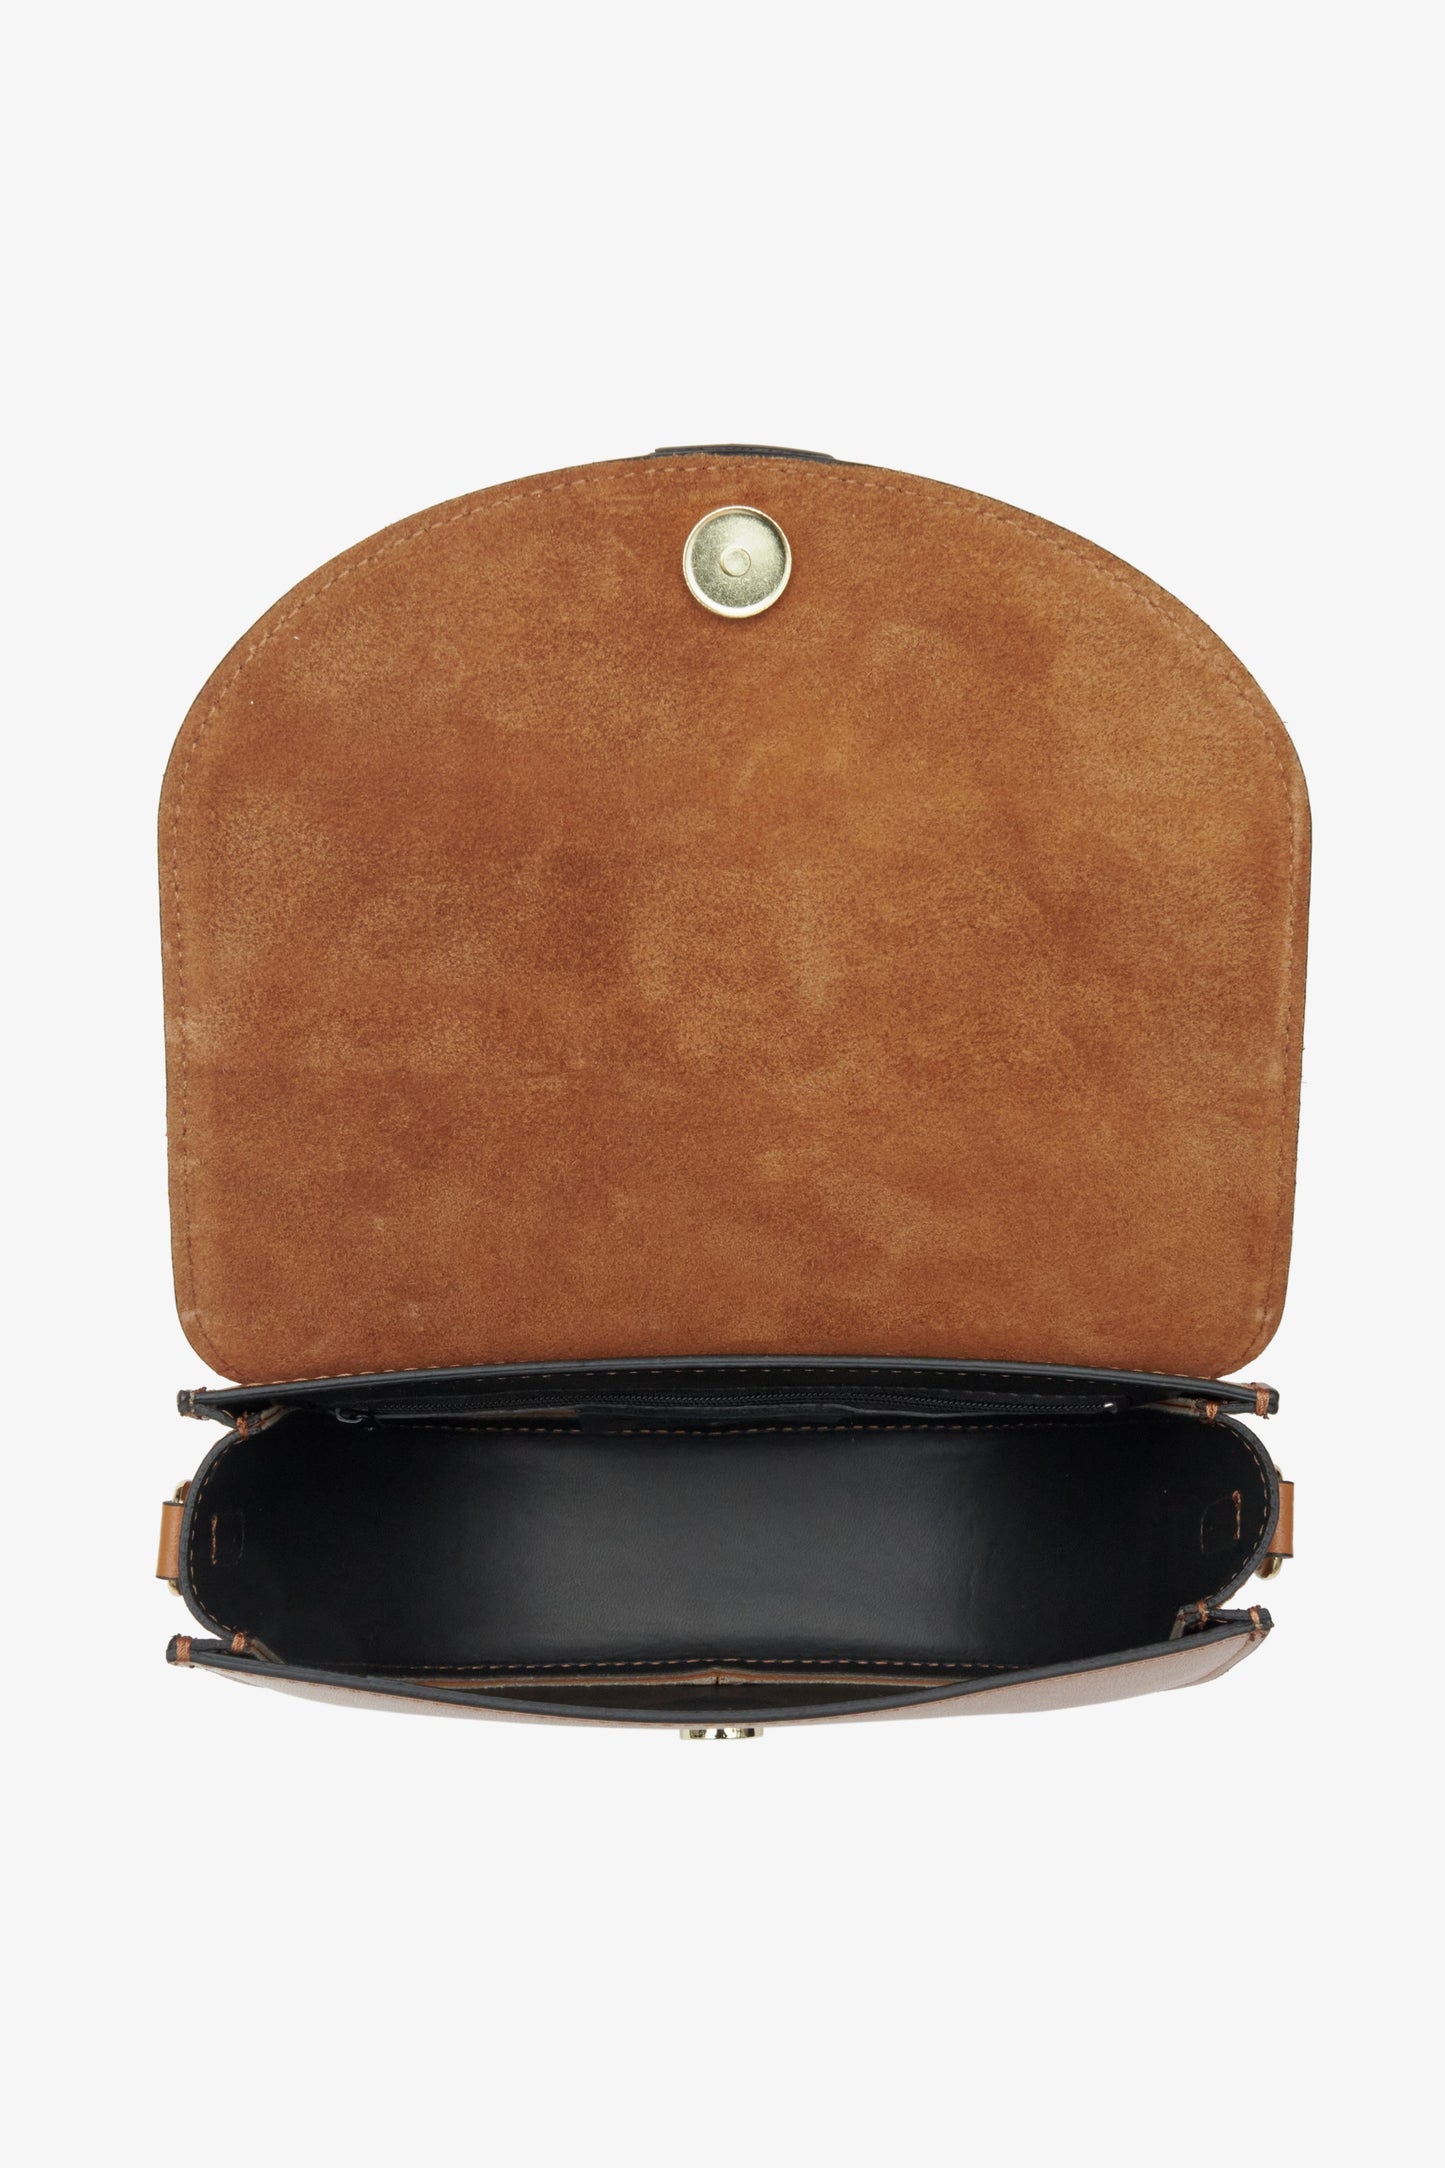 Brązowa torebka damska Estro w kolorze brązowym - prezentacja wnętrza torebki.